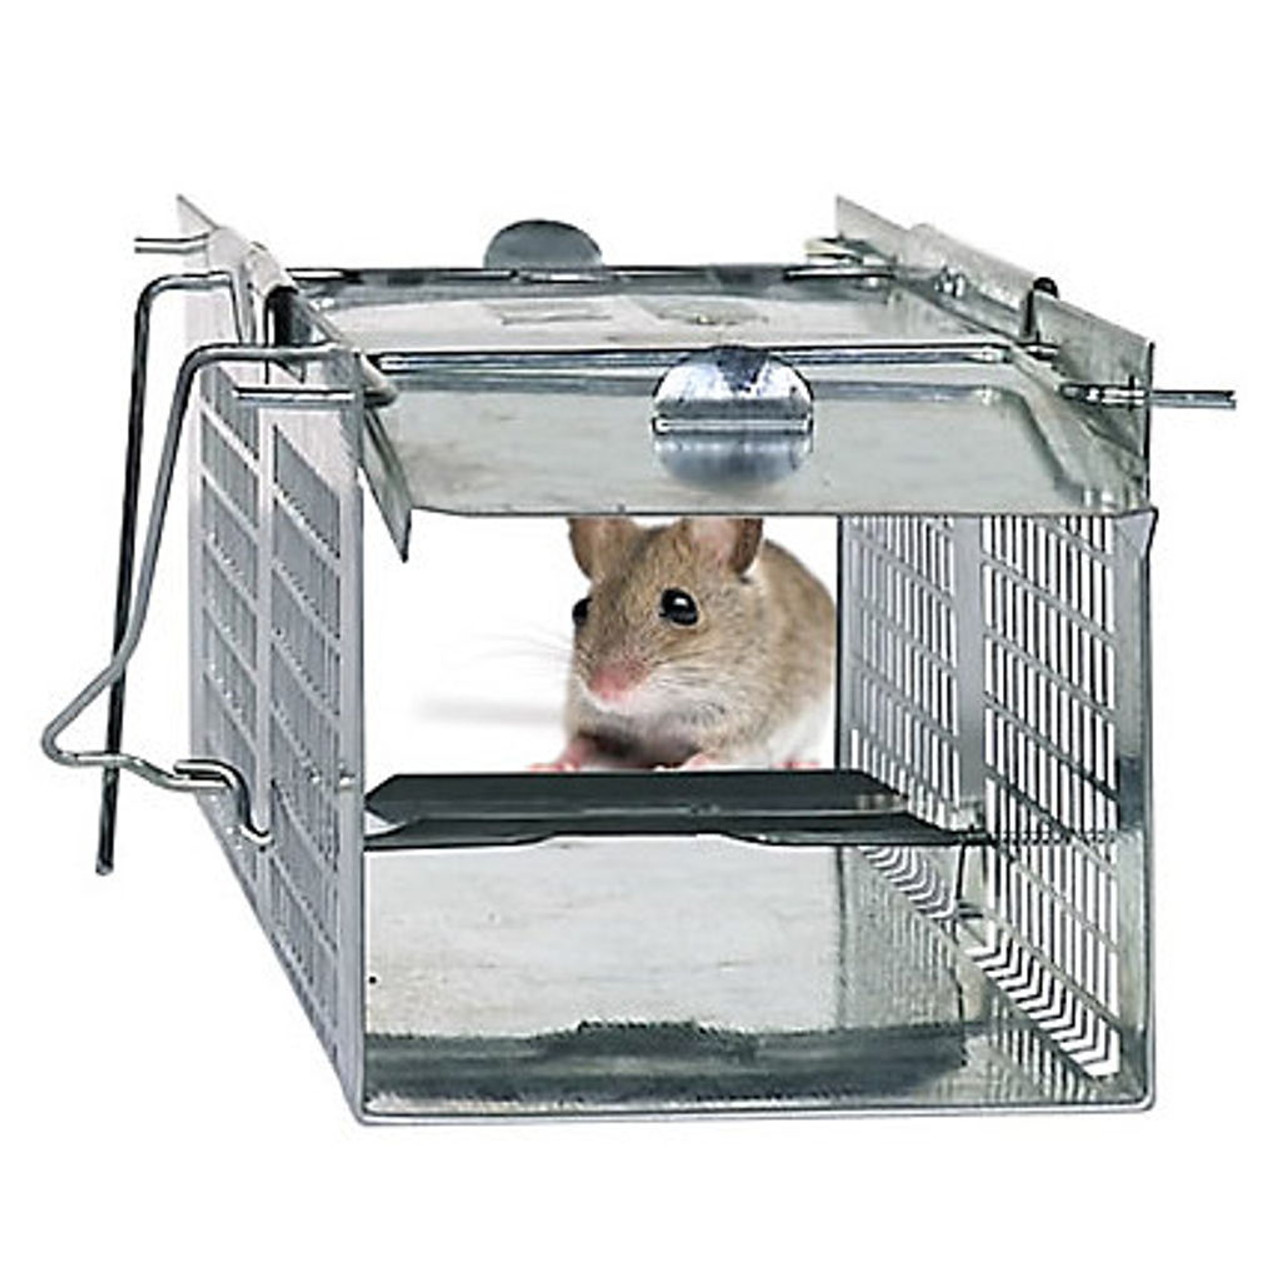 Havahart Live Traps  Traps Mice, Shrews, Voles